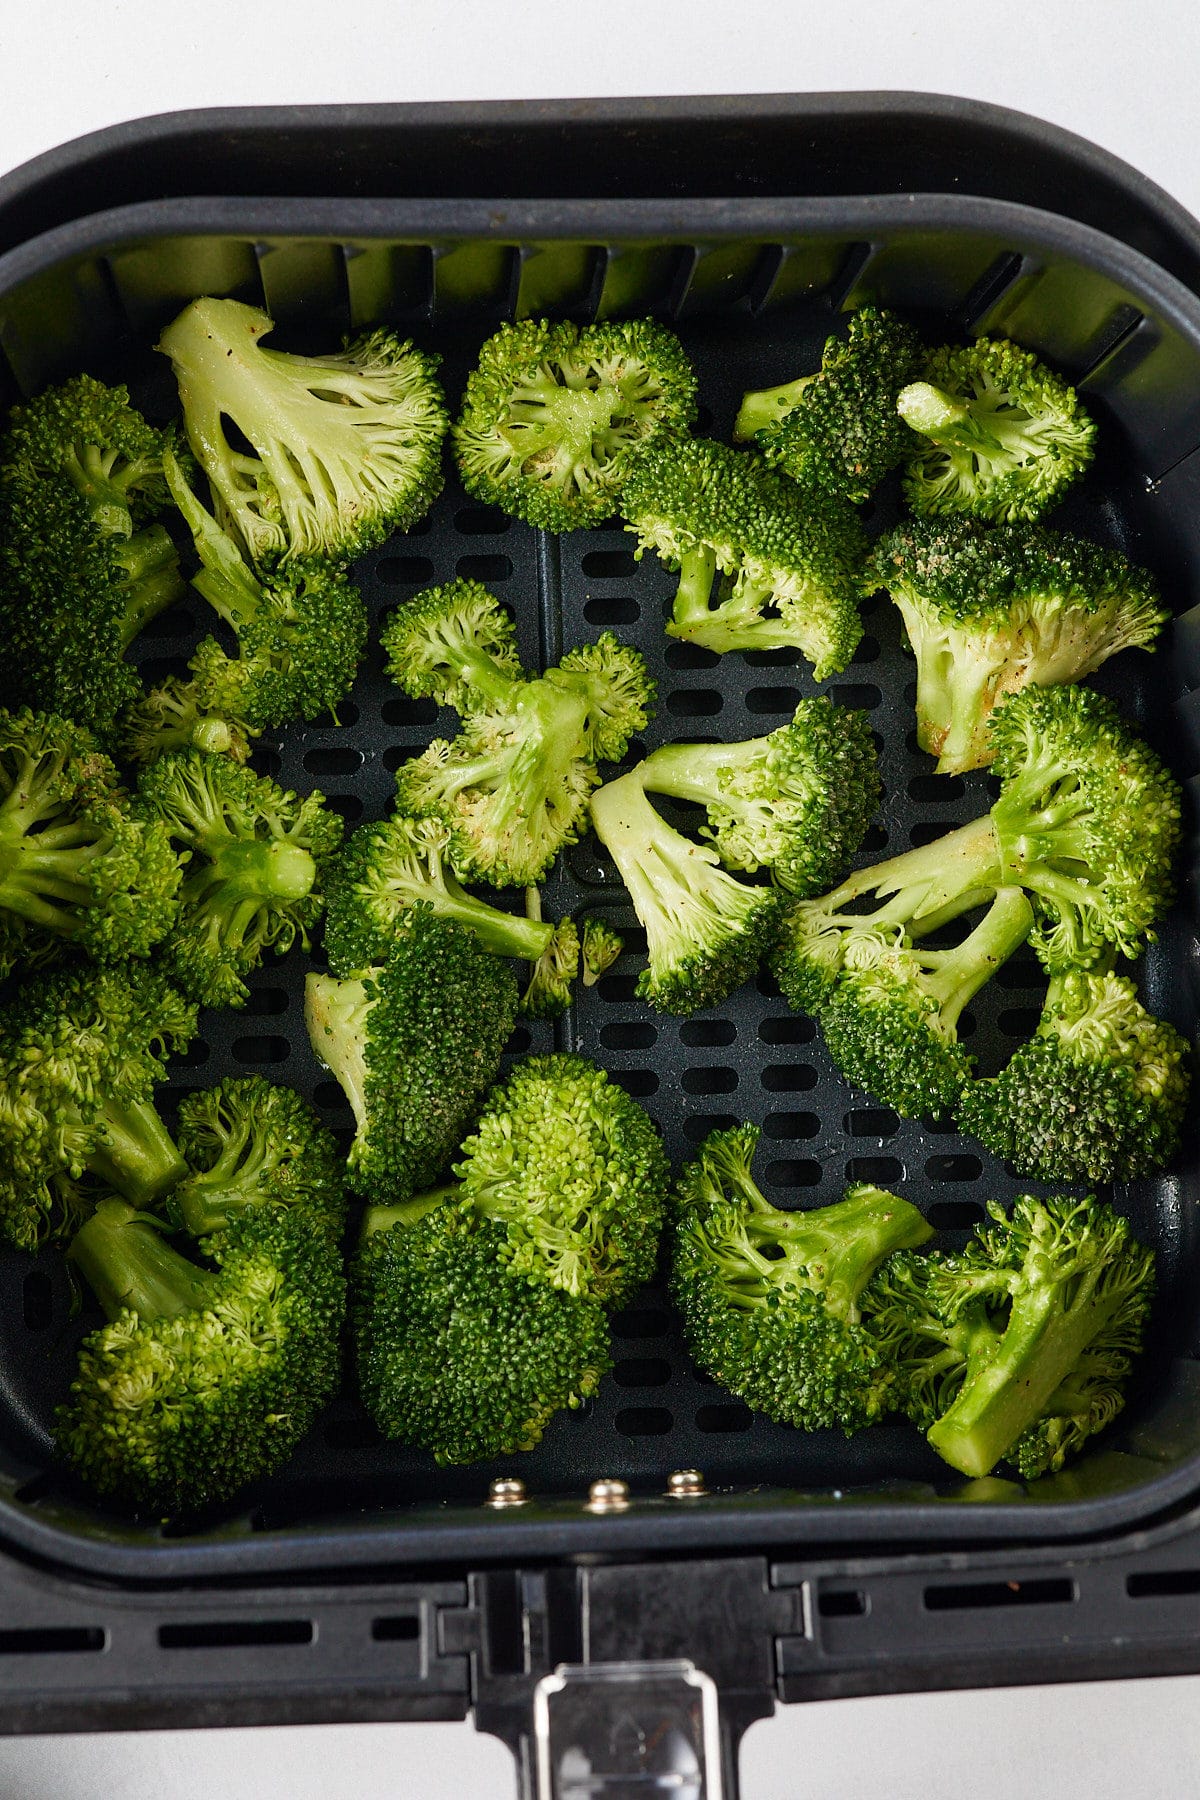 Raw broccoli in an air fryer basket.